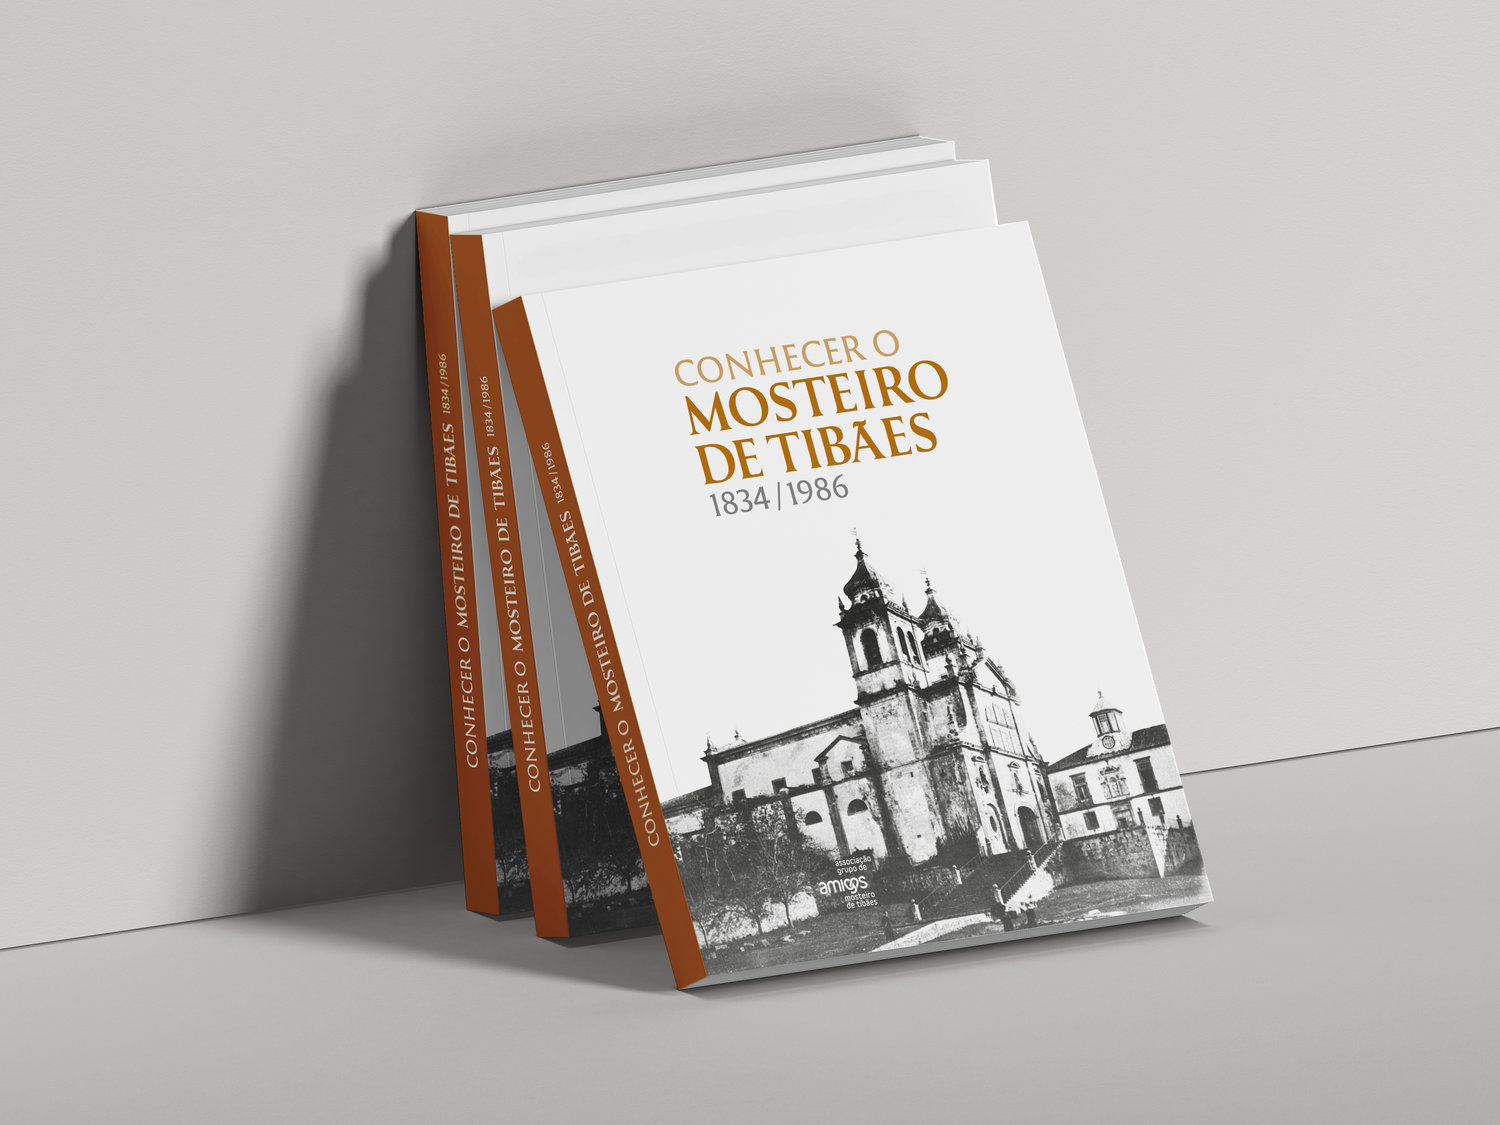 Cover of the book Conhecer o Mosteiro de Tibães (1834-1986)